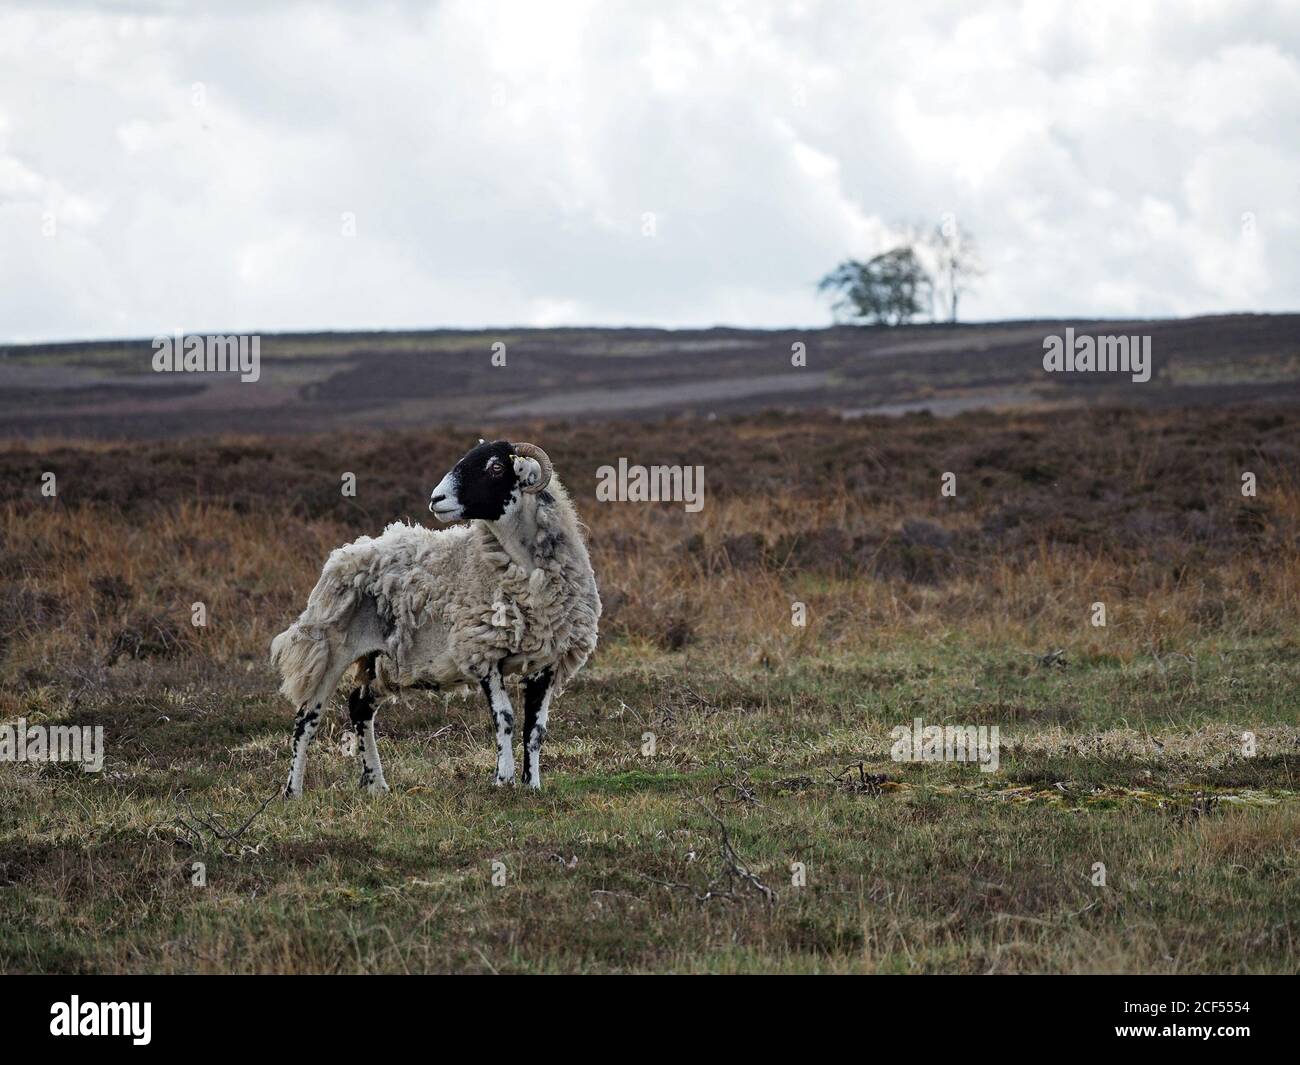 Un mouton à face noire adulte robuste sur une lande de bruyères botte sombre et robuste en polaire naturellement pendant que le printemps se tourne vers l'été à Cumbria, Angleterre, Royaume-Uni Banque D'Images